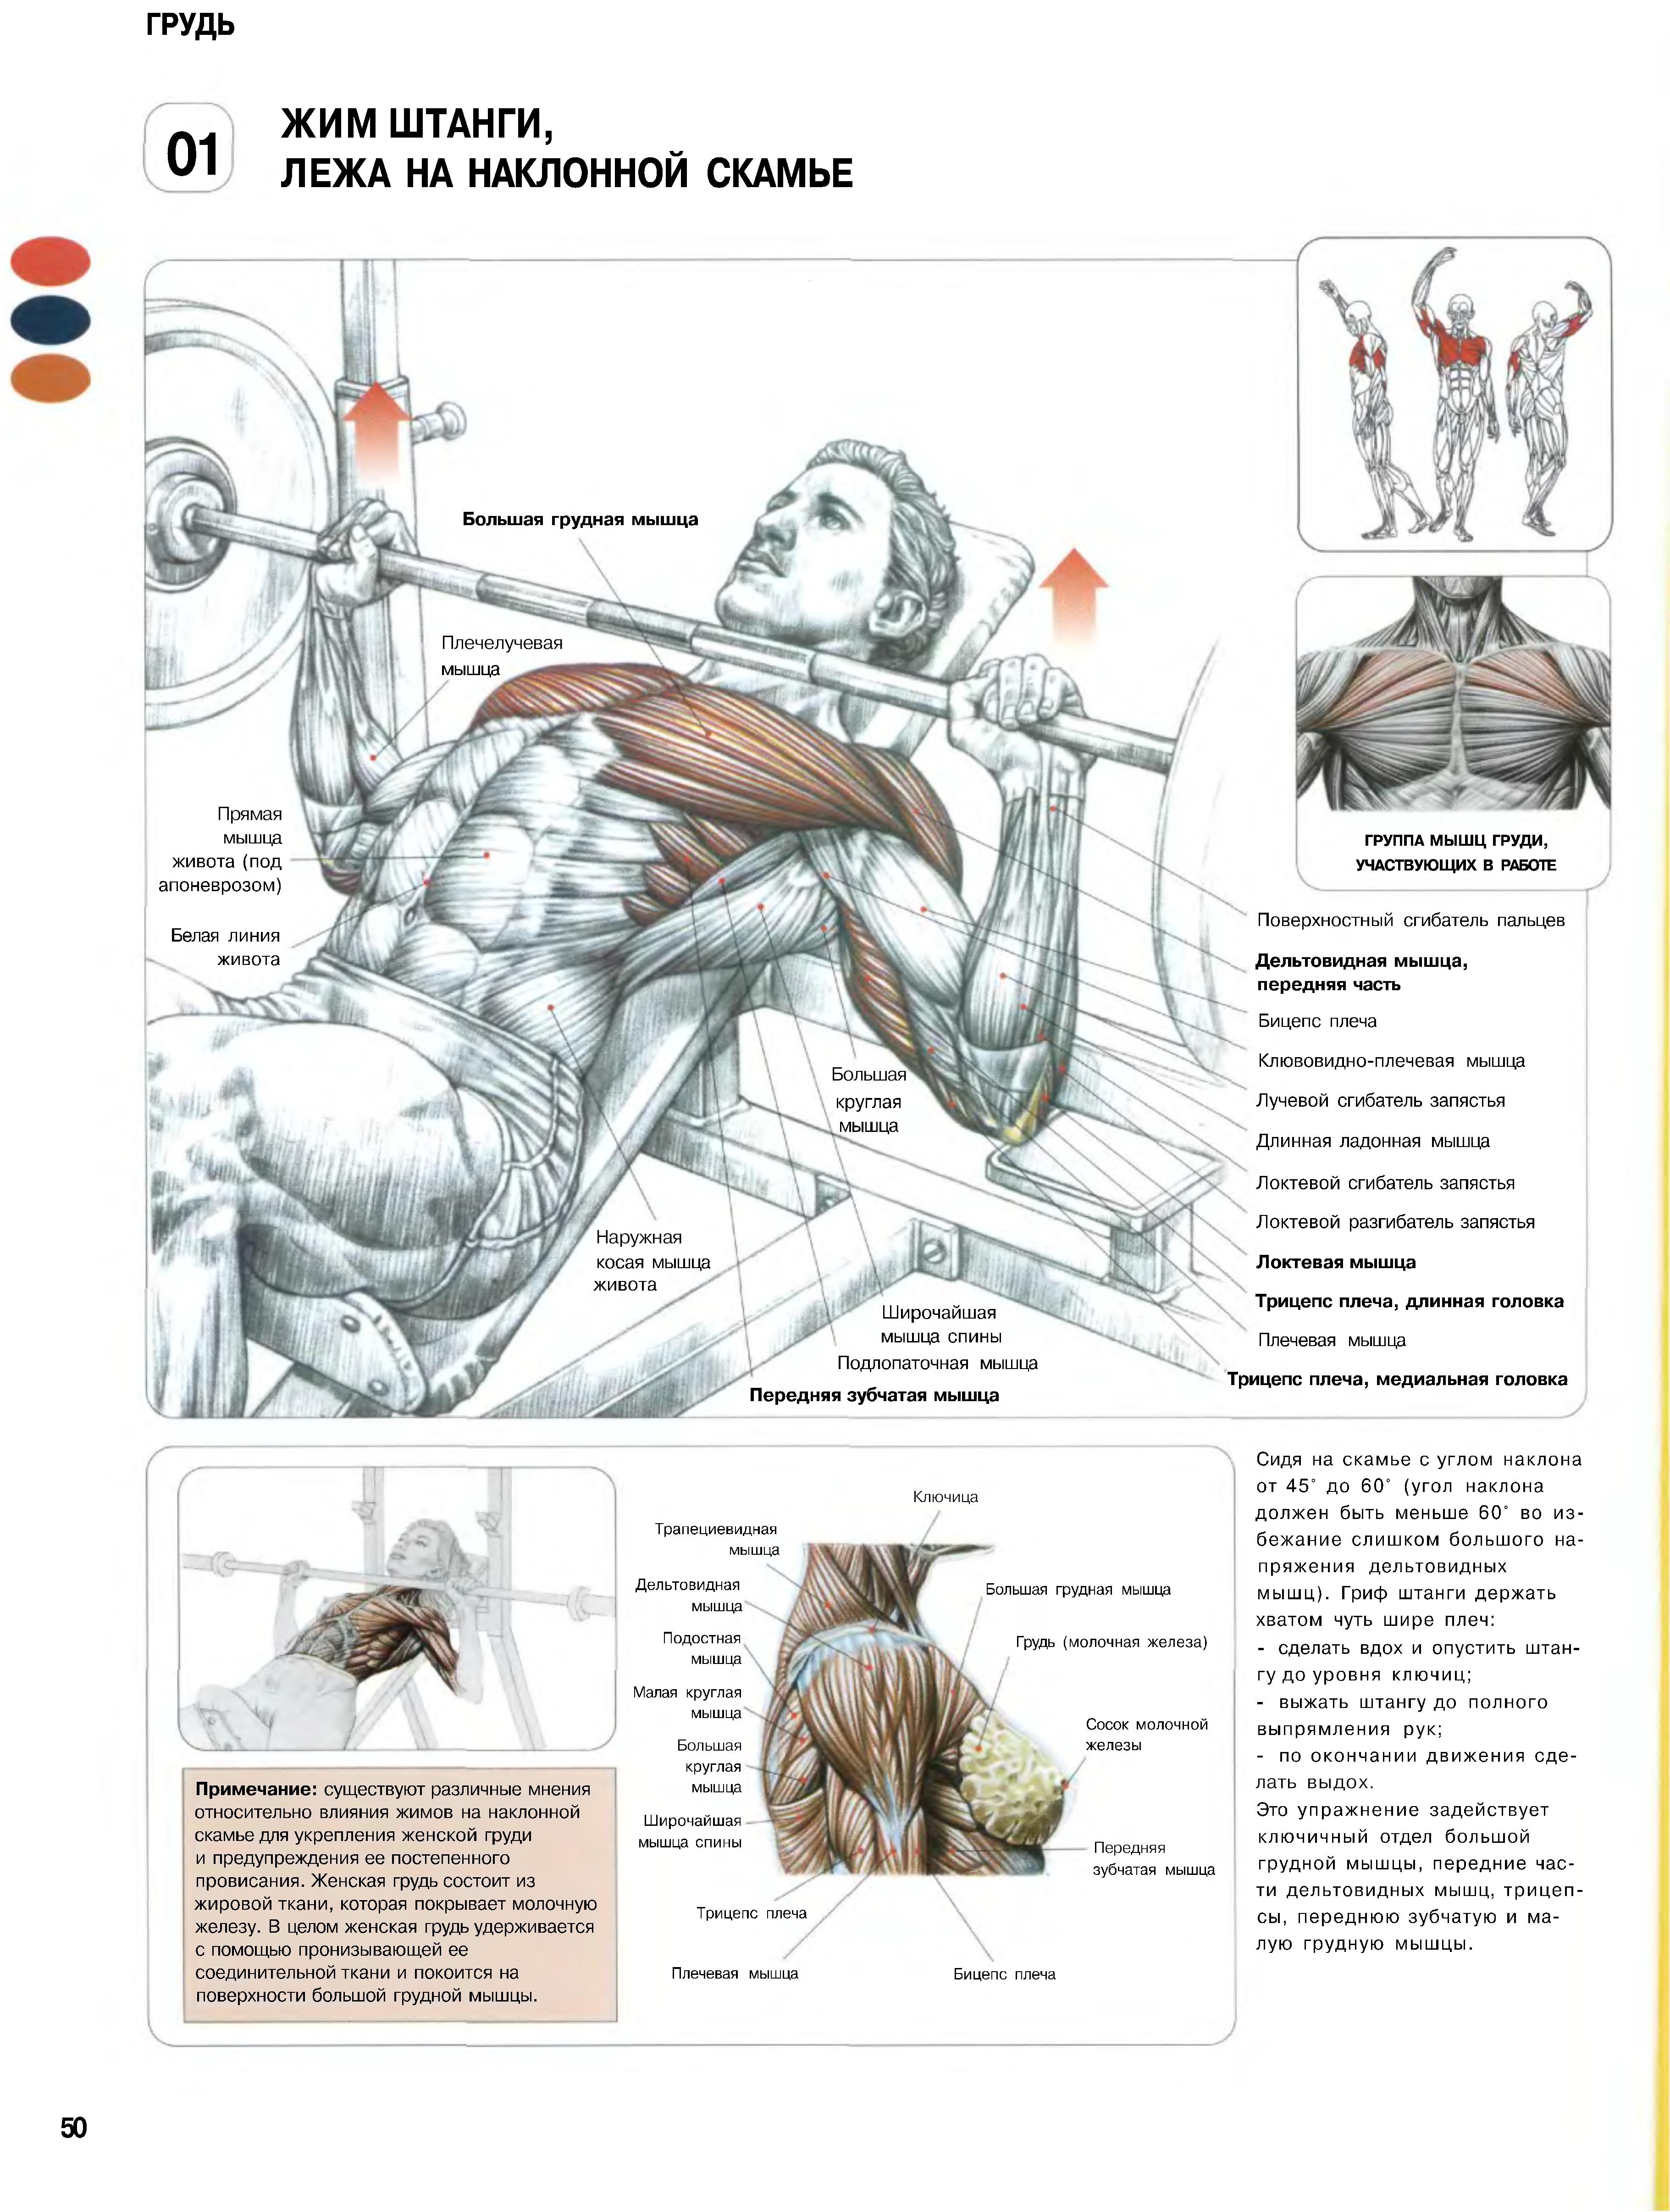 Упражнения в зале для грудных мышц мужчин. Жим лежа Делавье. Фредерик Делавье жим лежа. Анатомия силовых упражнений трицепс. Жим лежа анатомия мышц.